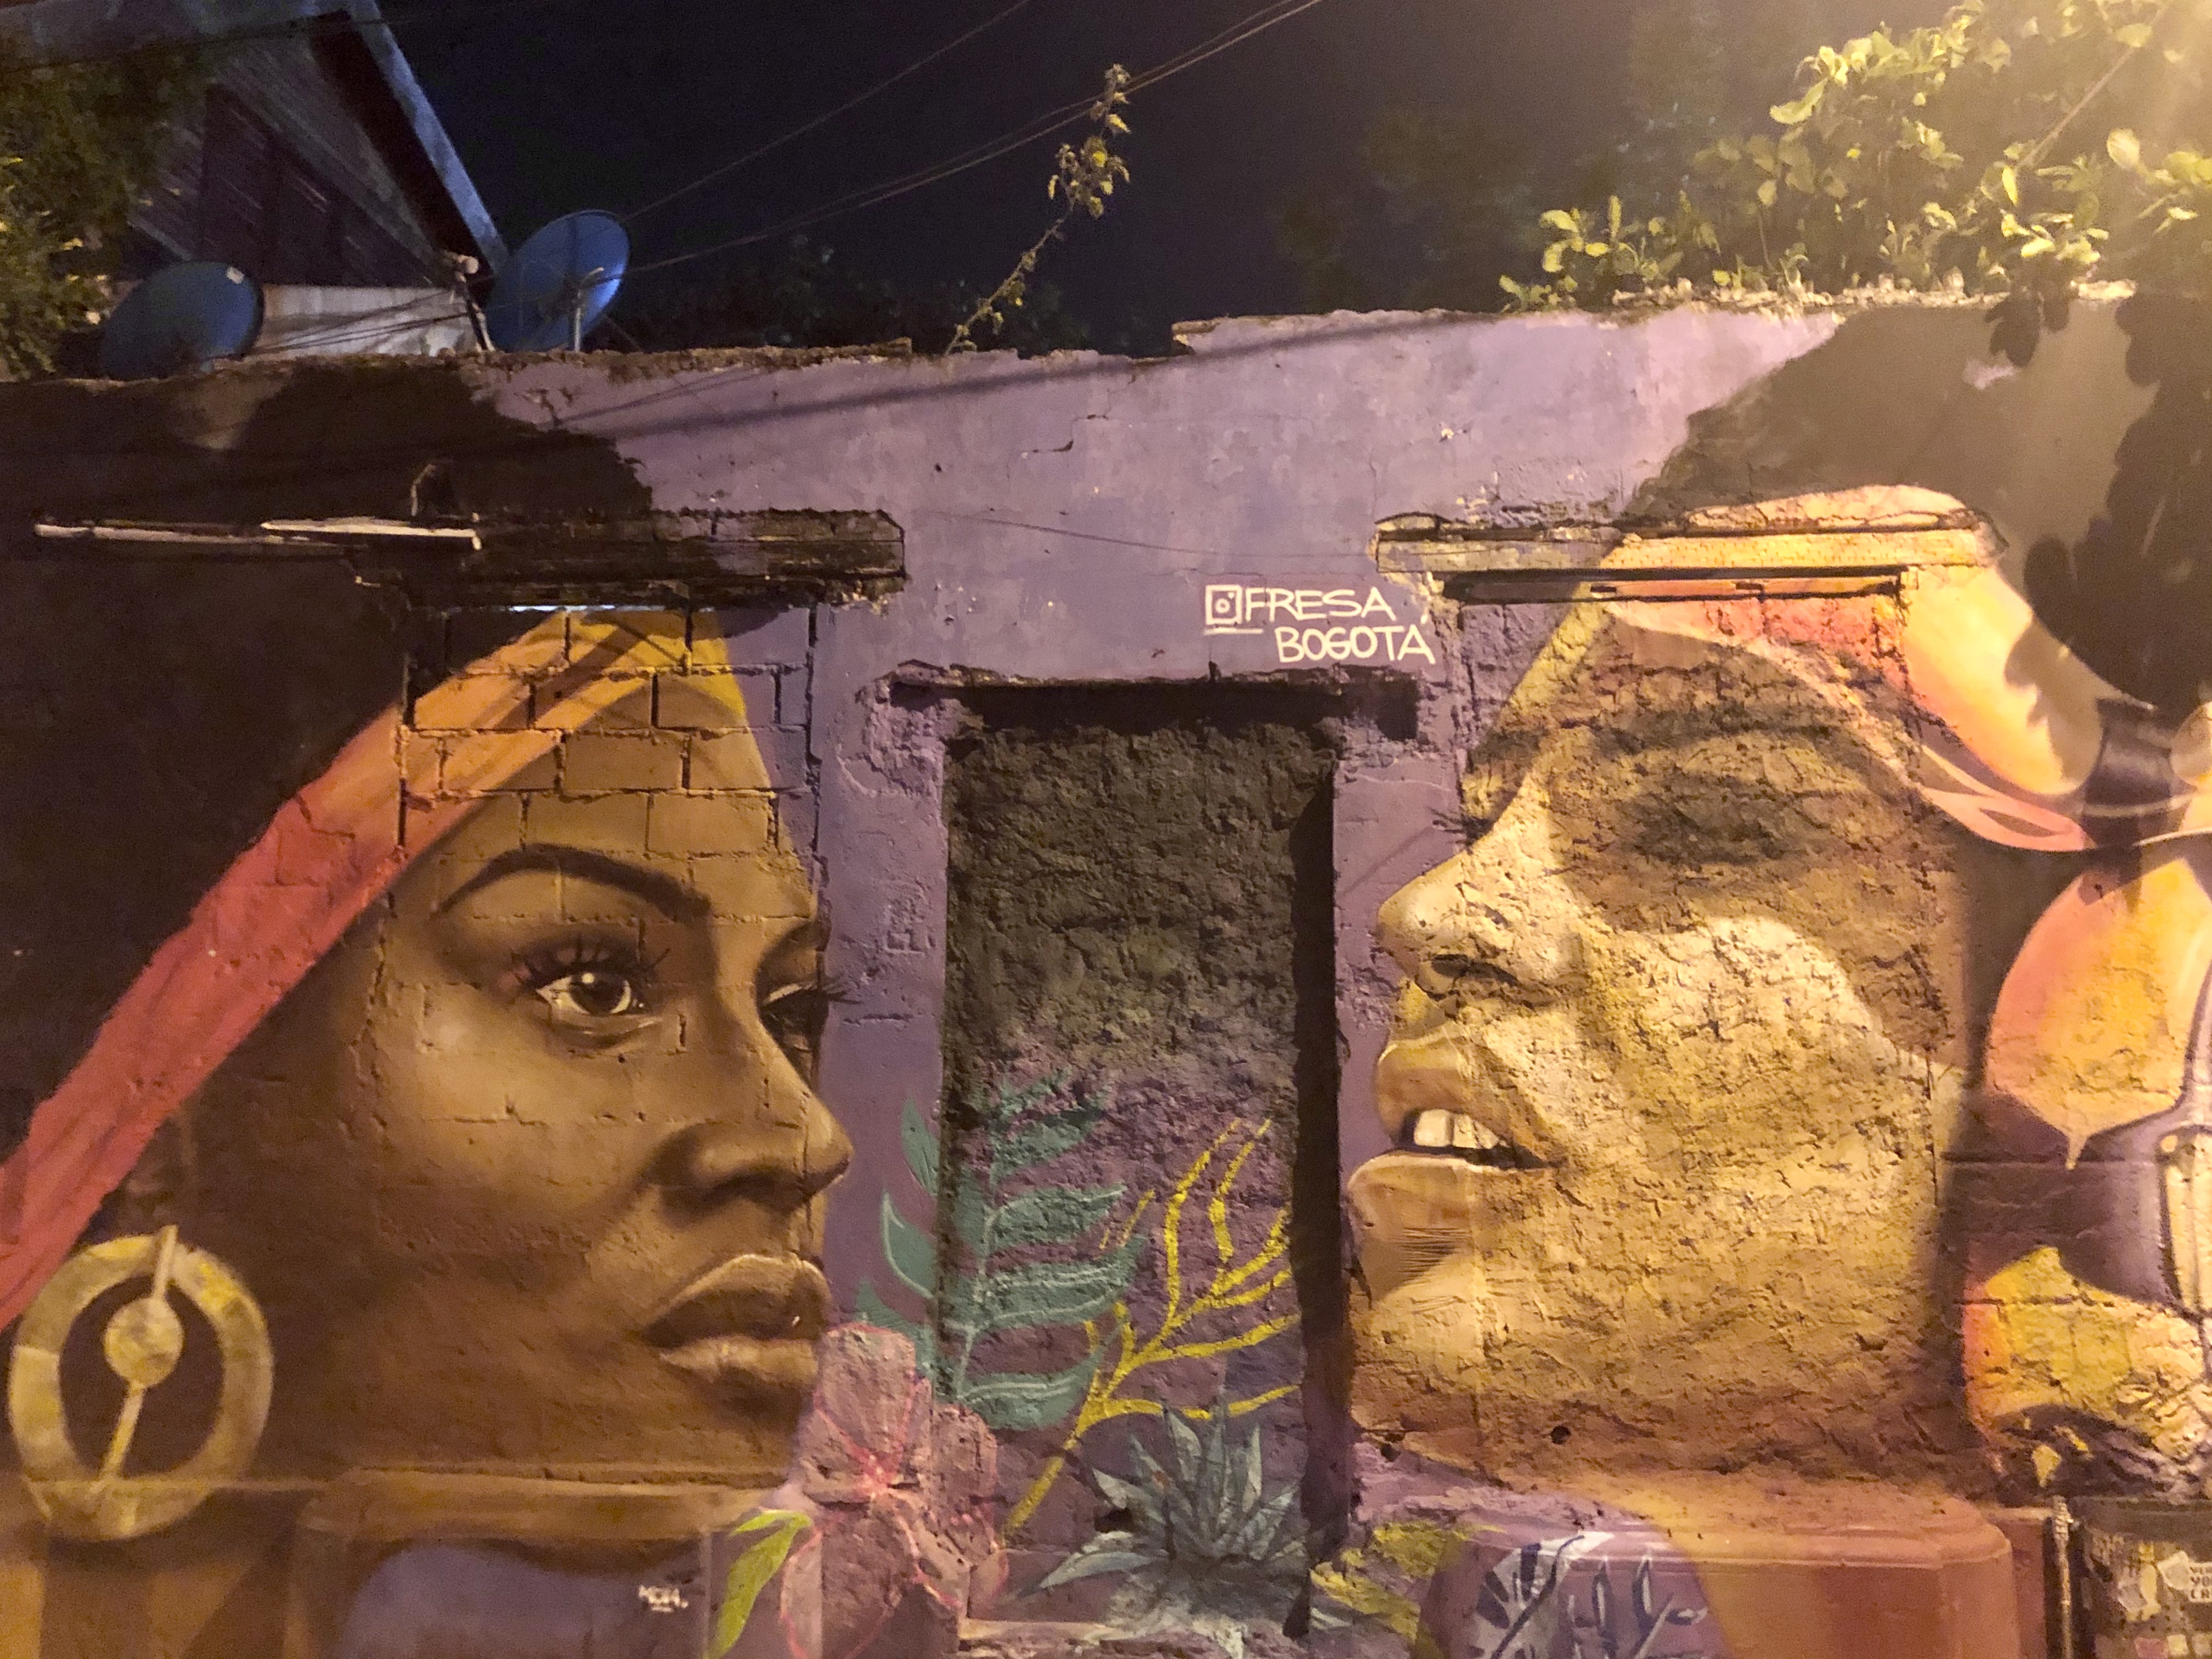 Getsemani a street art, a graffitik paradicsoma, ebben a kategóriában Dél-Amerikában csak a chilei Valparaisóban láttam pazarabb alkotásokat, de ott az egész város egy hatalmas streetart-gyűjtemény, míg emitt inkább figyelemfelhívó díszítőelem. A falfestmény, a murális művészet a kontinensen hagyományosan erős, most is él és virágzik.